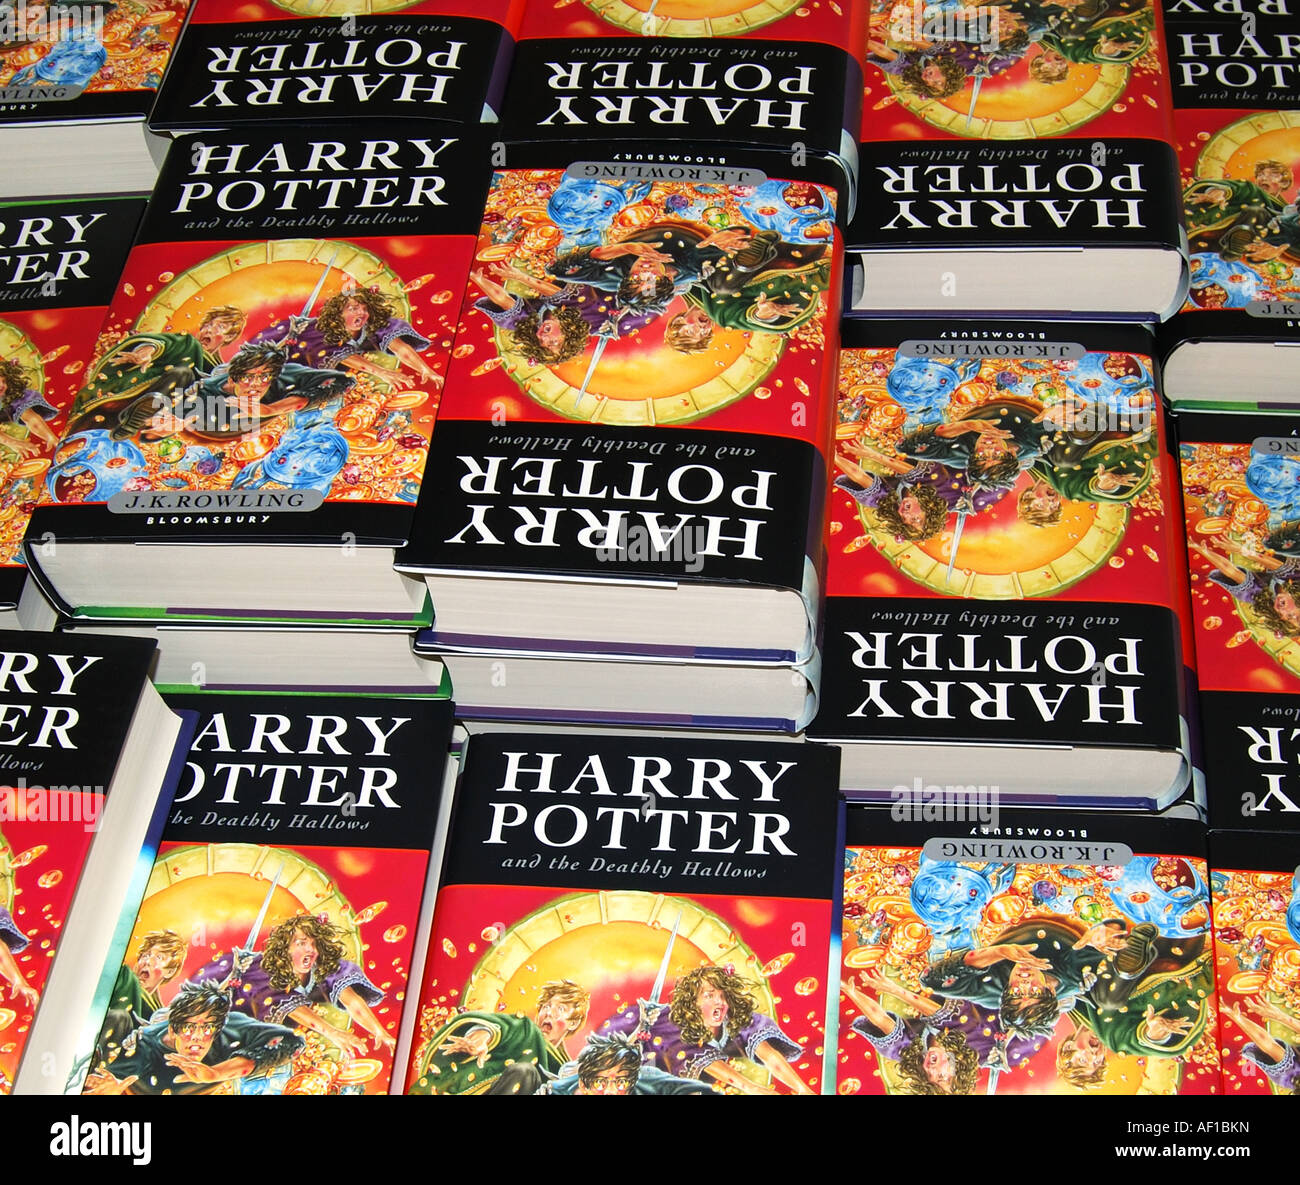 Tas de nouveaux livres de Harry Potter, W.H.Smith, Staines-upon-Thames, Surrey, Angleterre, Royaume-Uni Banque D'Images